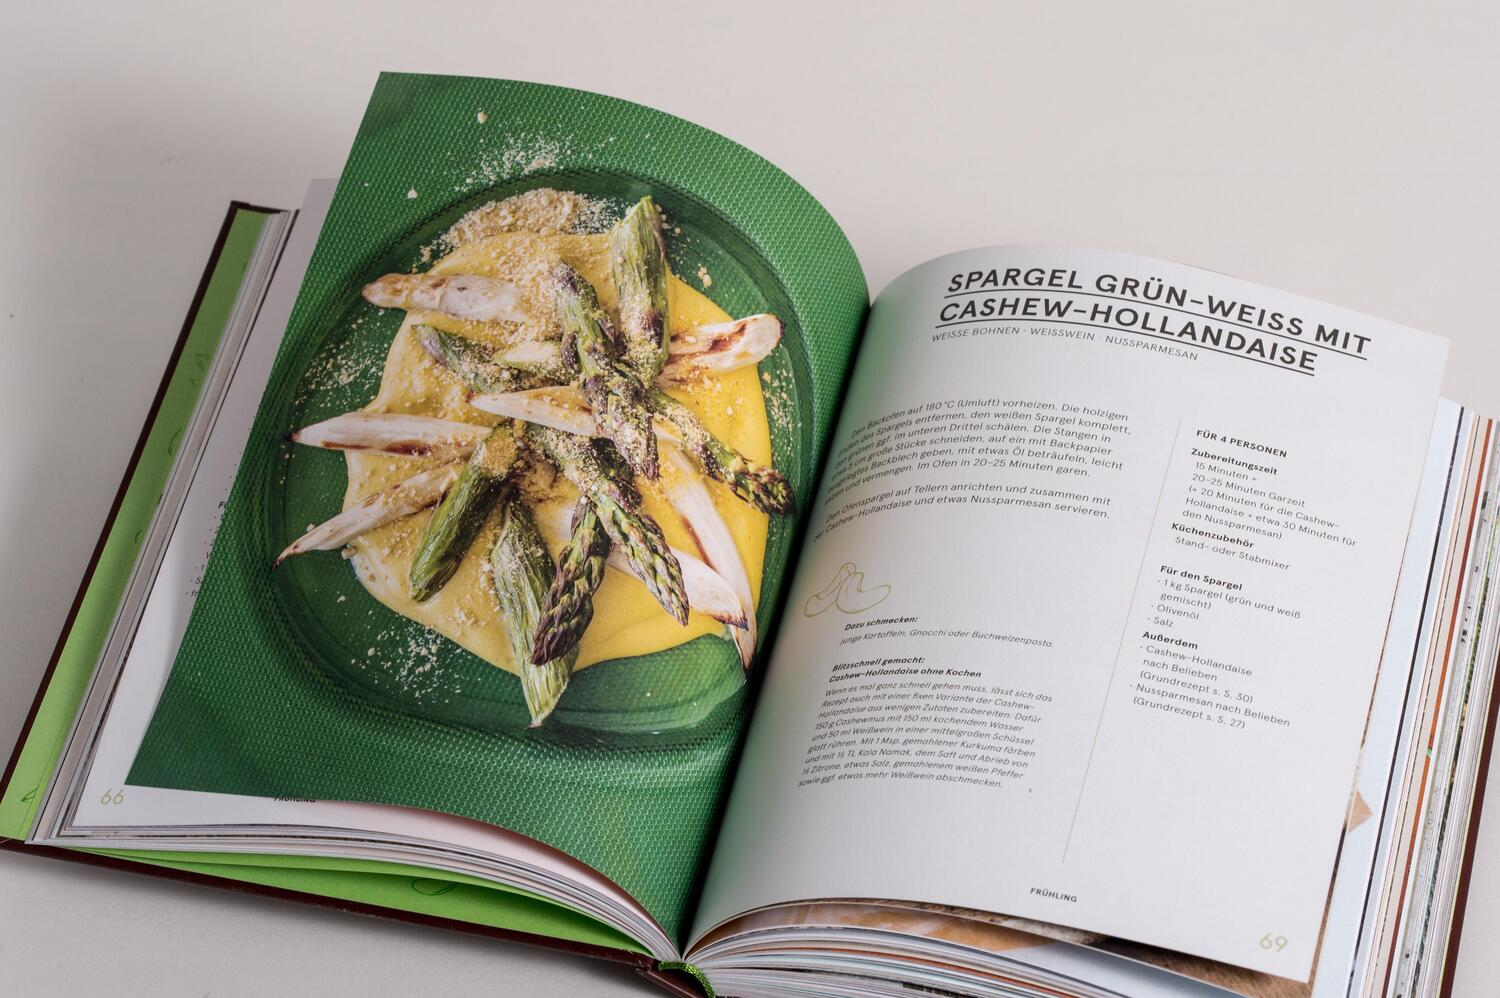 Bild: 9783791388366 | Das Nuss-Kochbuch | 80 vegane Rezepte zum Kochen und Backen mit Nüssen